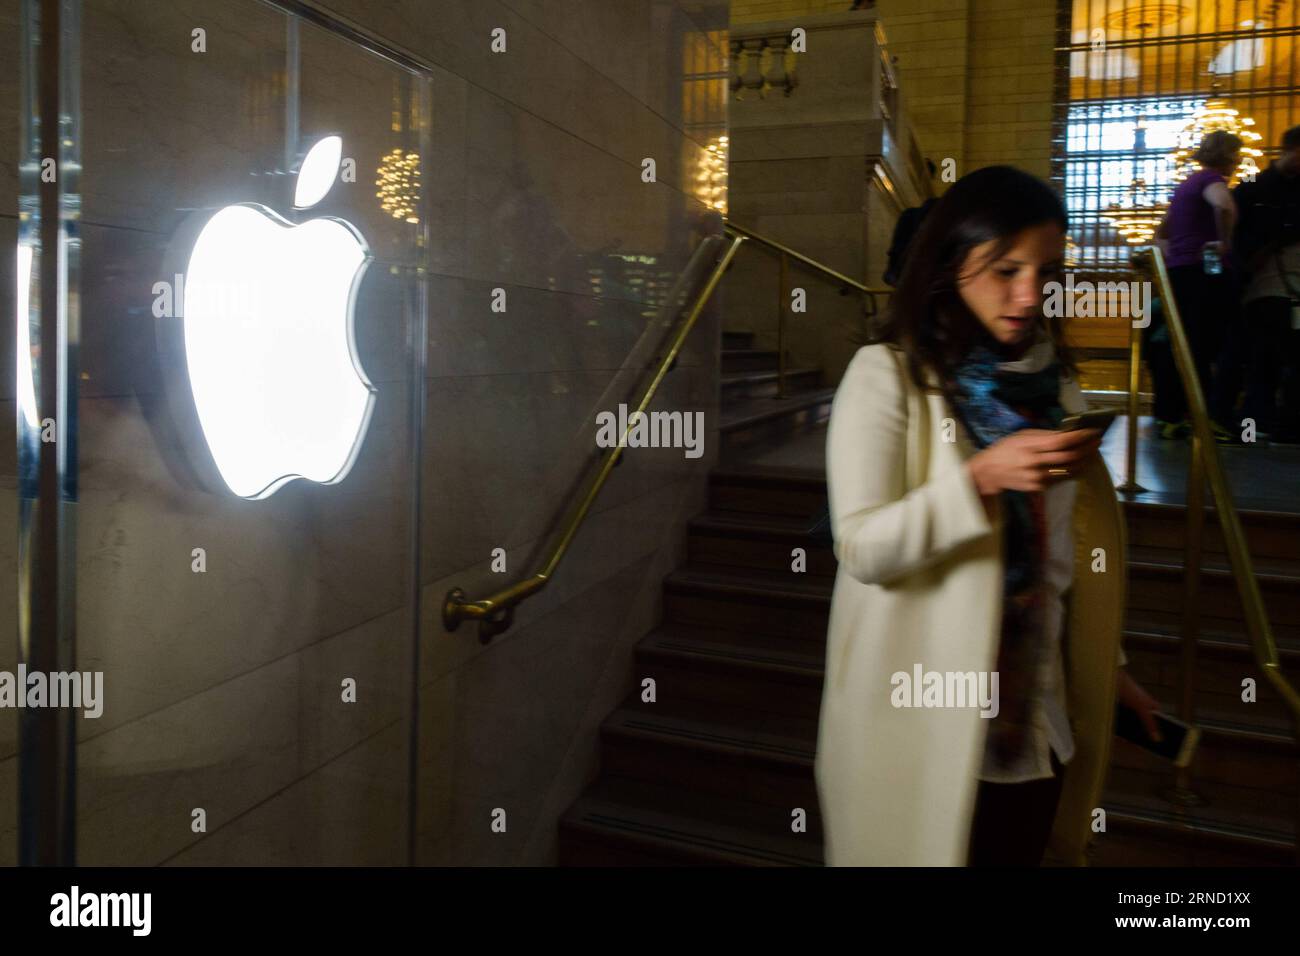 (160428) -- NEW YORK, 28. April 2016 -- Ein Kunde verlässt den Apple Store am Grand Central Terminal in New York, USA, 28. April 2016. Apple Inc. Veröffentlichte am Dienstag die Geschäftsergebnisse für das zweite Quartal 2016, die den ersten Rückgang von Quartalsumsatz und Gewinn seit 2003 im Vergleich zum Vorjahr und den ersten Rückgang bei den iPhone-Verkäufen zeigten. ) U.S.-NEW YORK-APPLE-SALES-DECINCE LixMuzi PUBLICATIONxNOTxINxCHN 160428 New YORK April 28 2016 ein Kunde verlässt den Apple Store AM Grand Central Terminal in New York USA April 28 2016 Apple INC AM Dienstag veröffentlicht Fiscal R Stockfoto